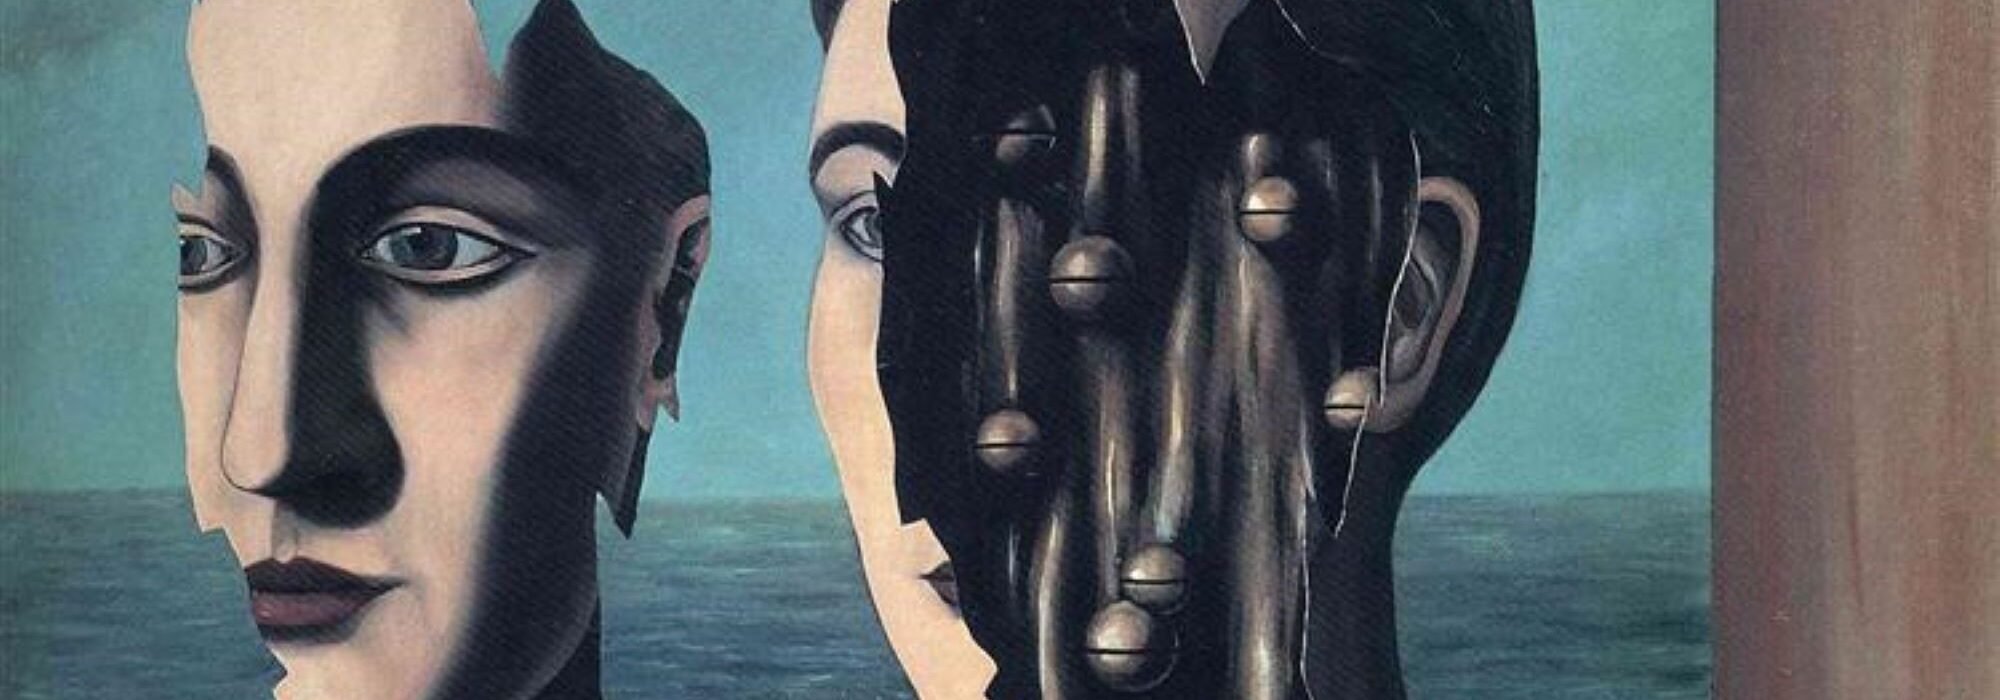 Imagem: O duplo segredo (Magritte, 1927)